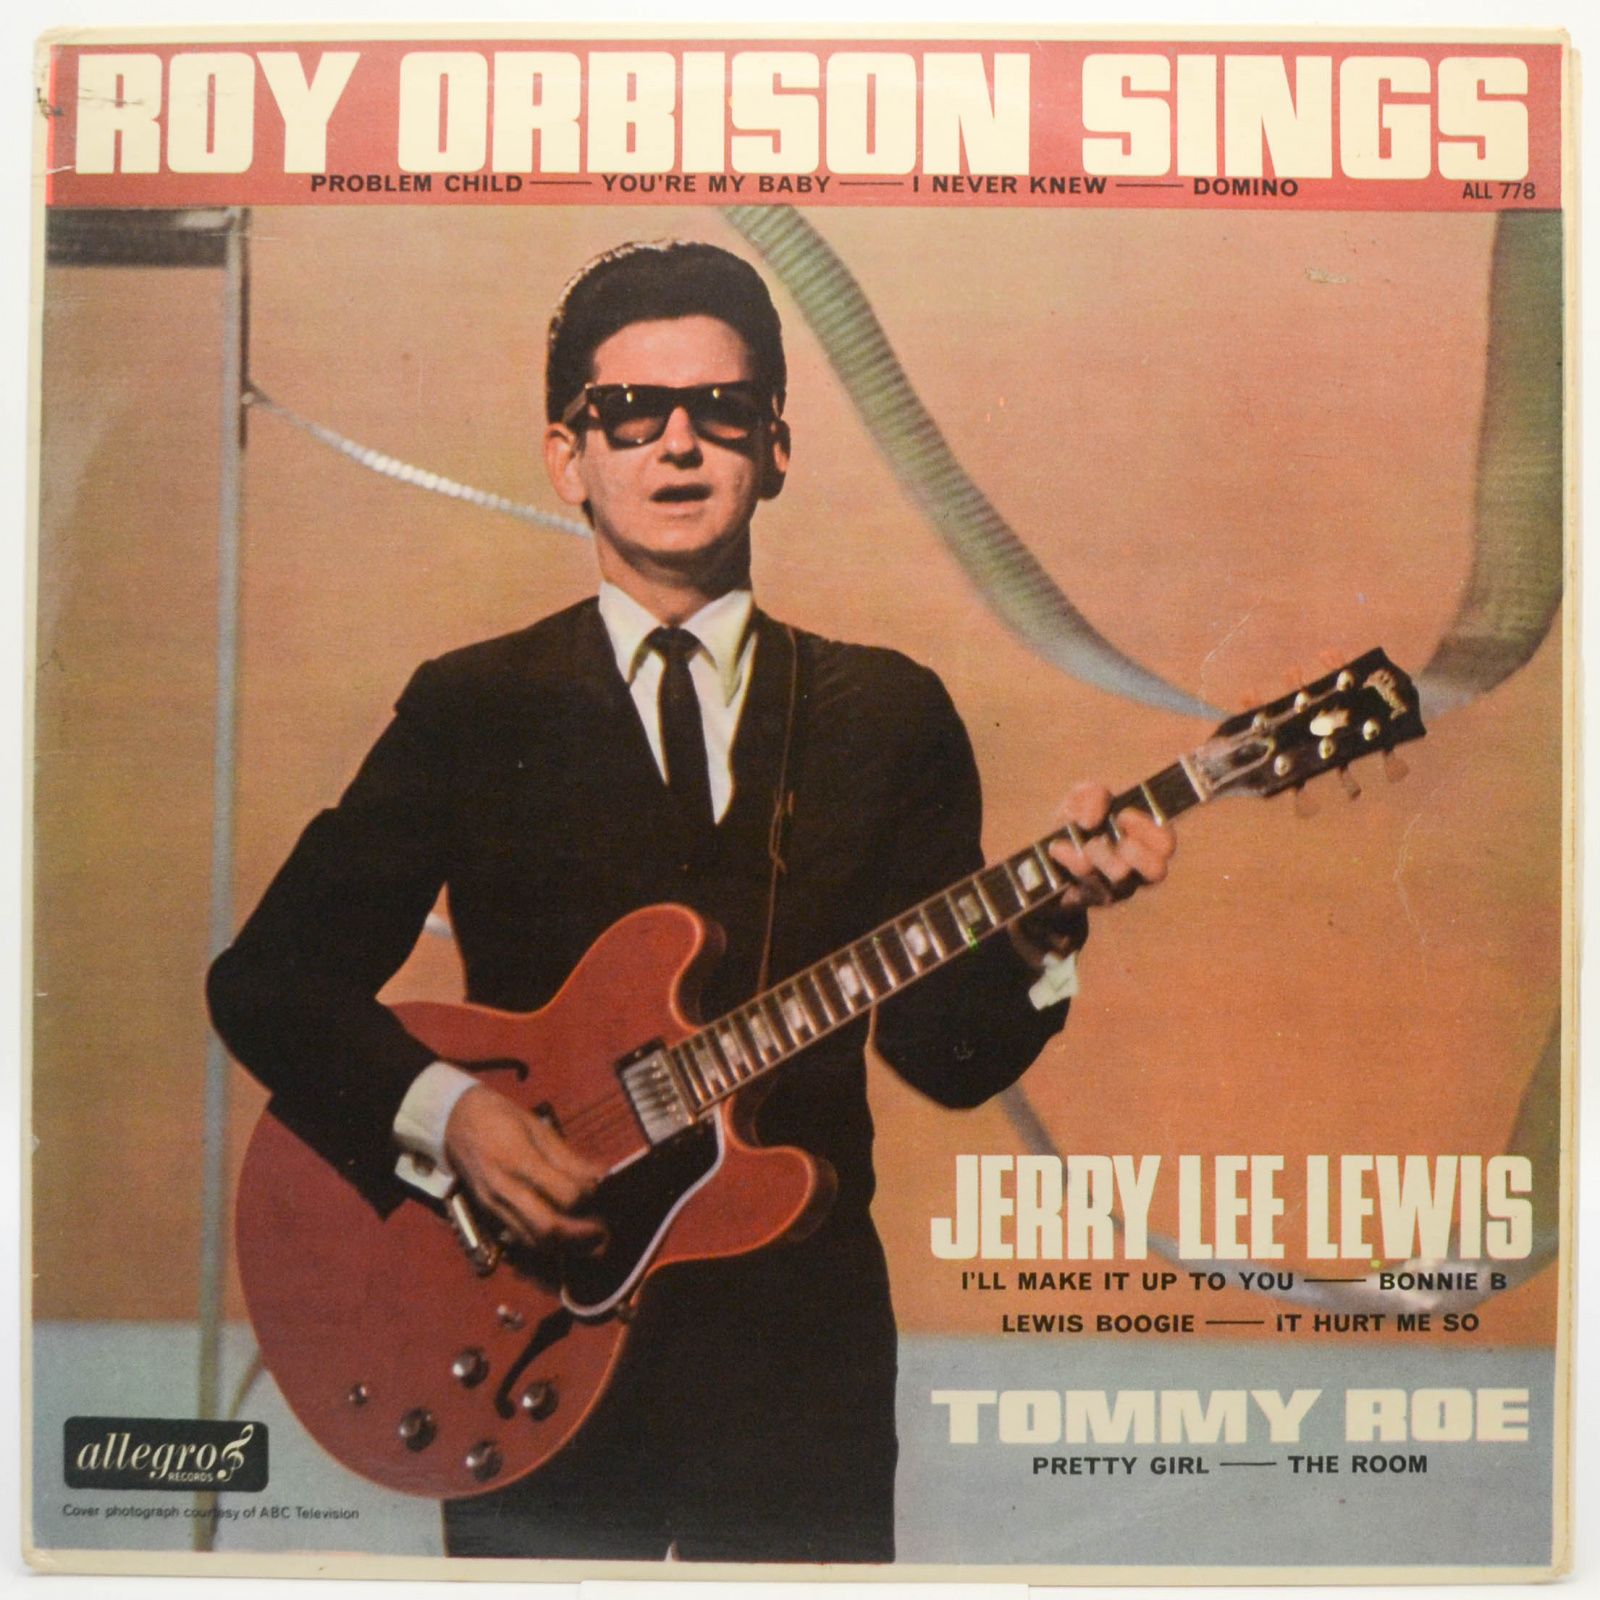 Roy Orbison, Jerry Lee Lewis & Tommy Roe — Roy Orbison Sings, 1965